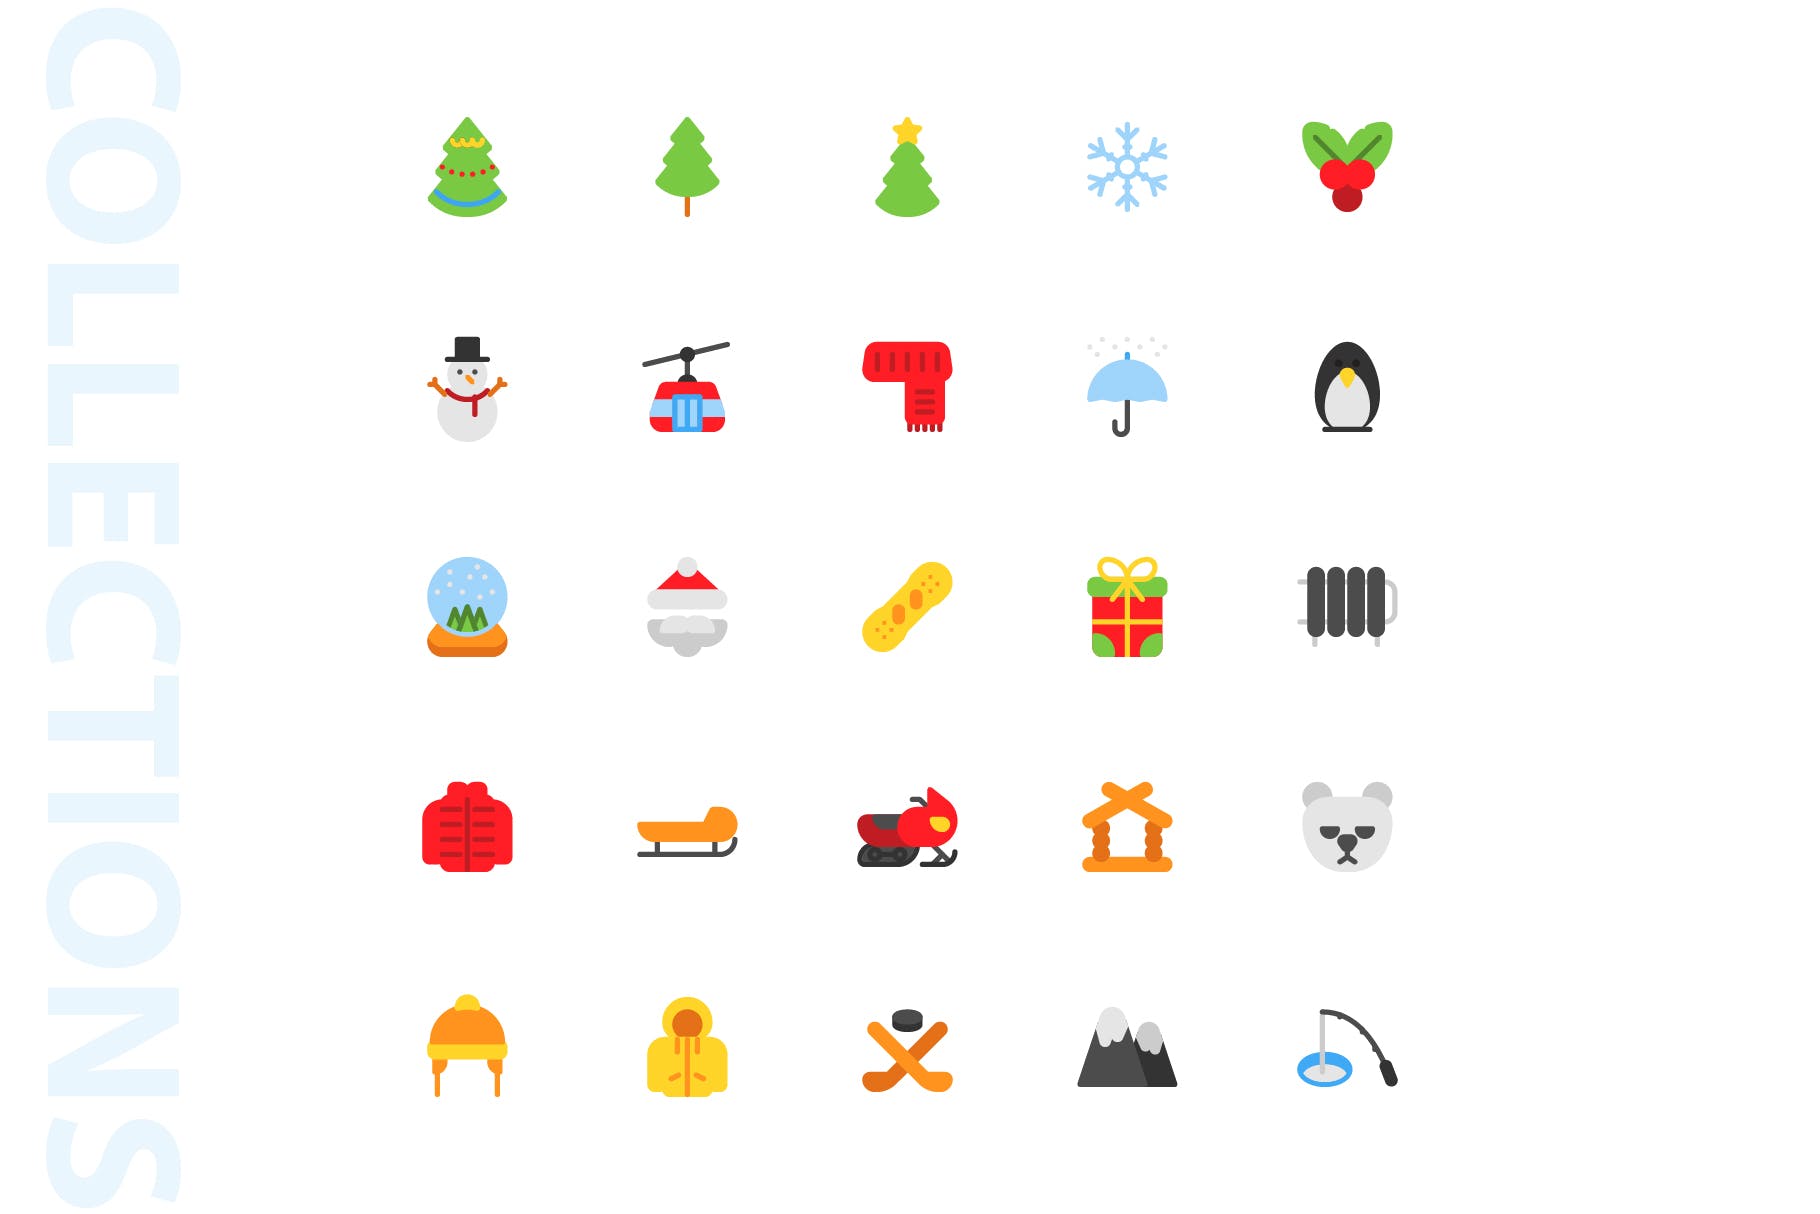 25枚冬天主题扁平设计风格矢量第一素材精选图标v1 Winter Flat Icons插图(3)